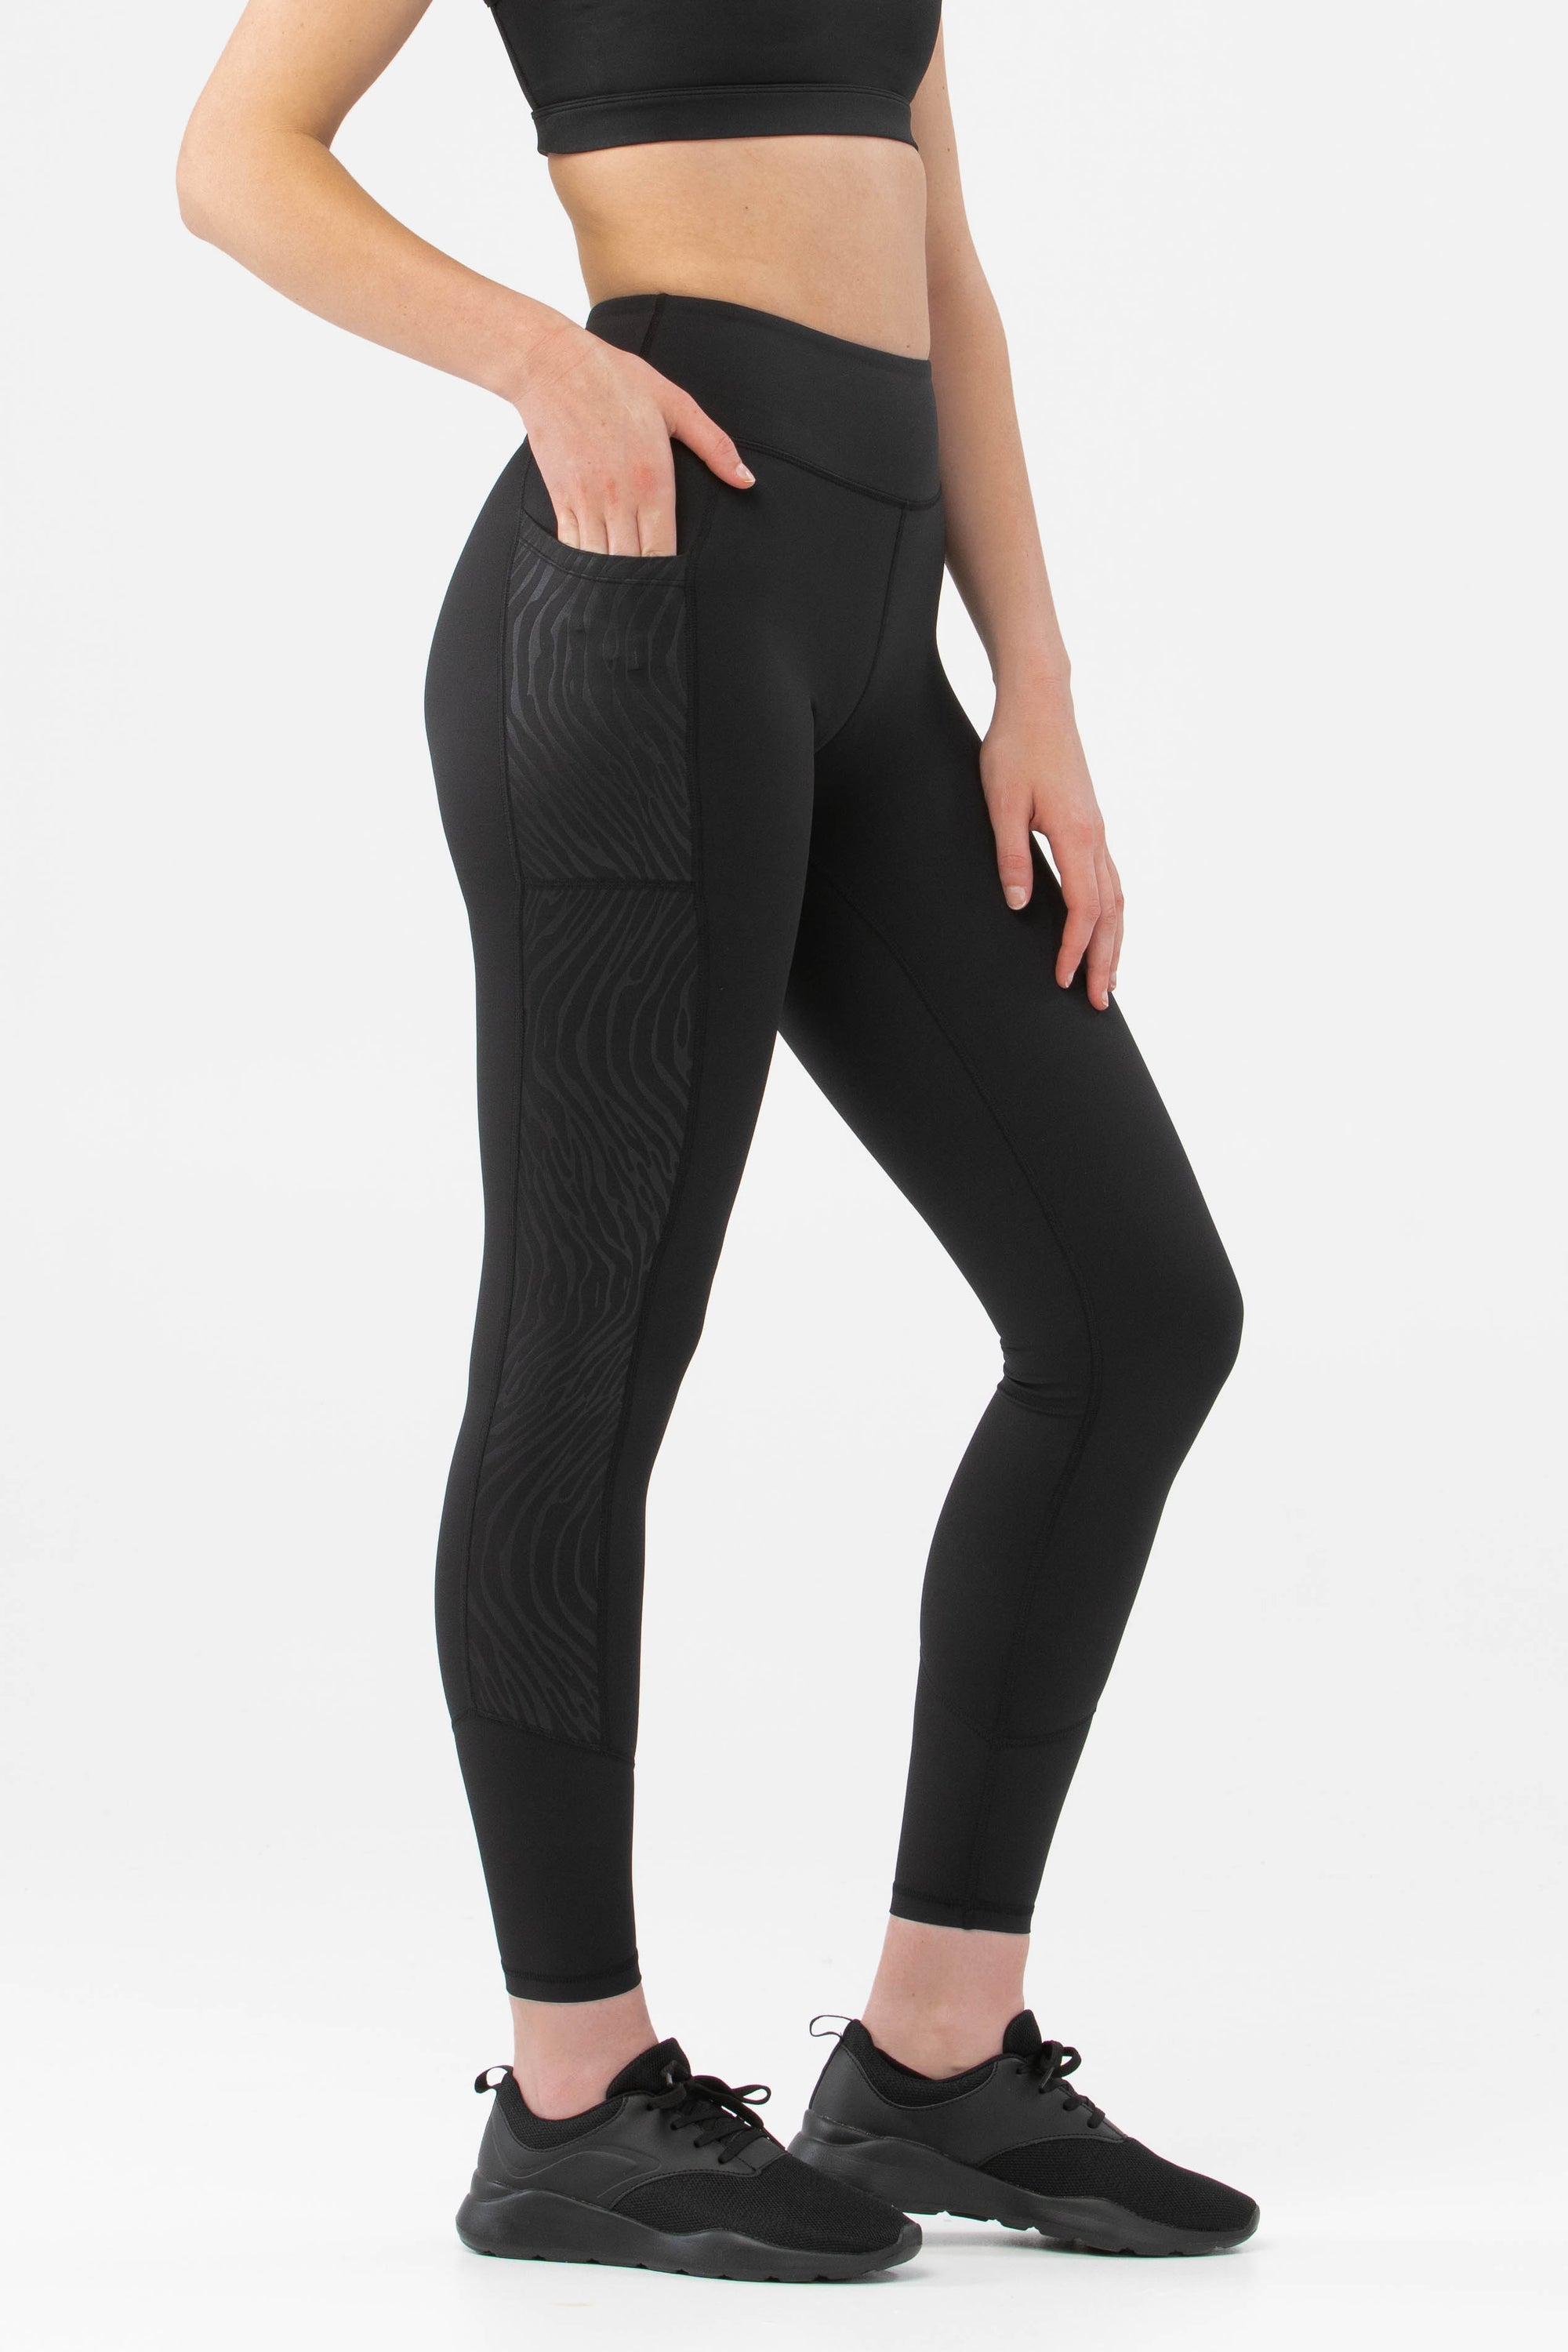 fitphyt proof 100% - High squat Leggings leggings | Waisted Womens